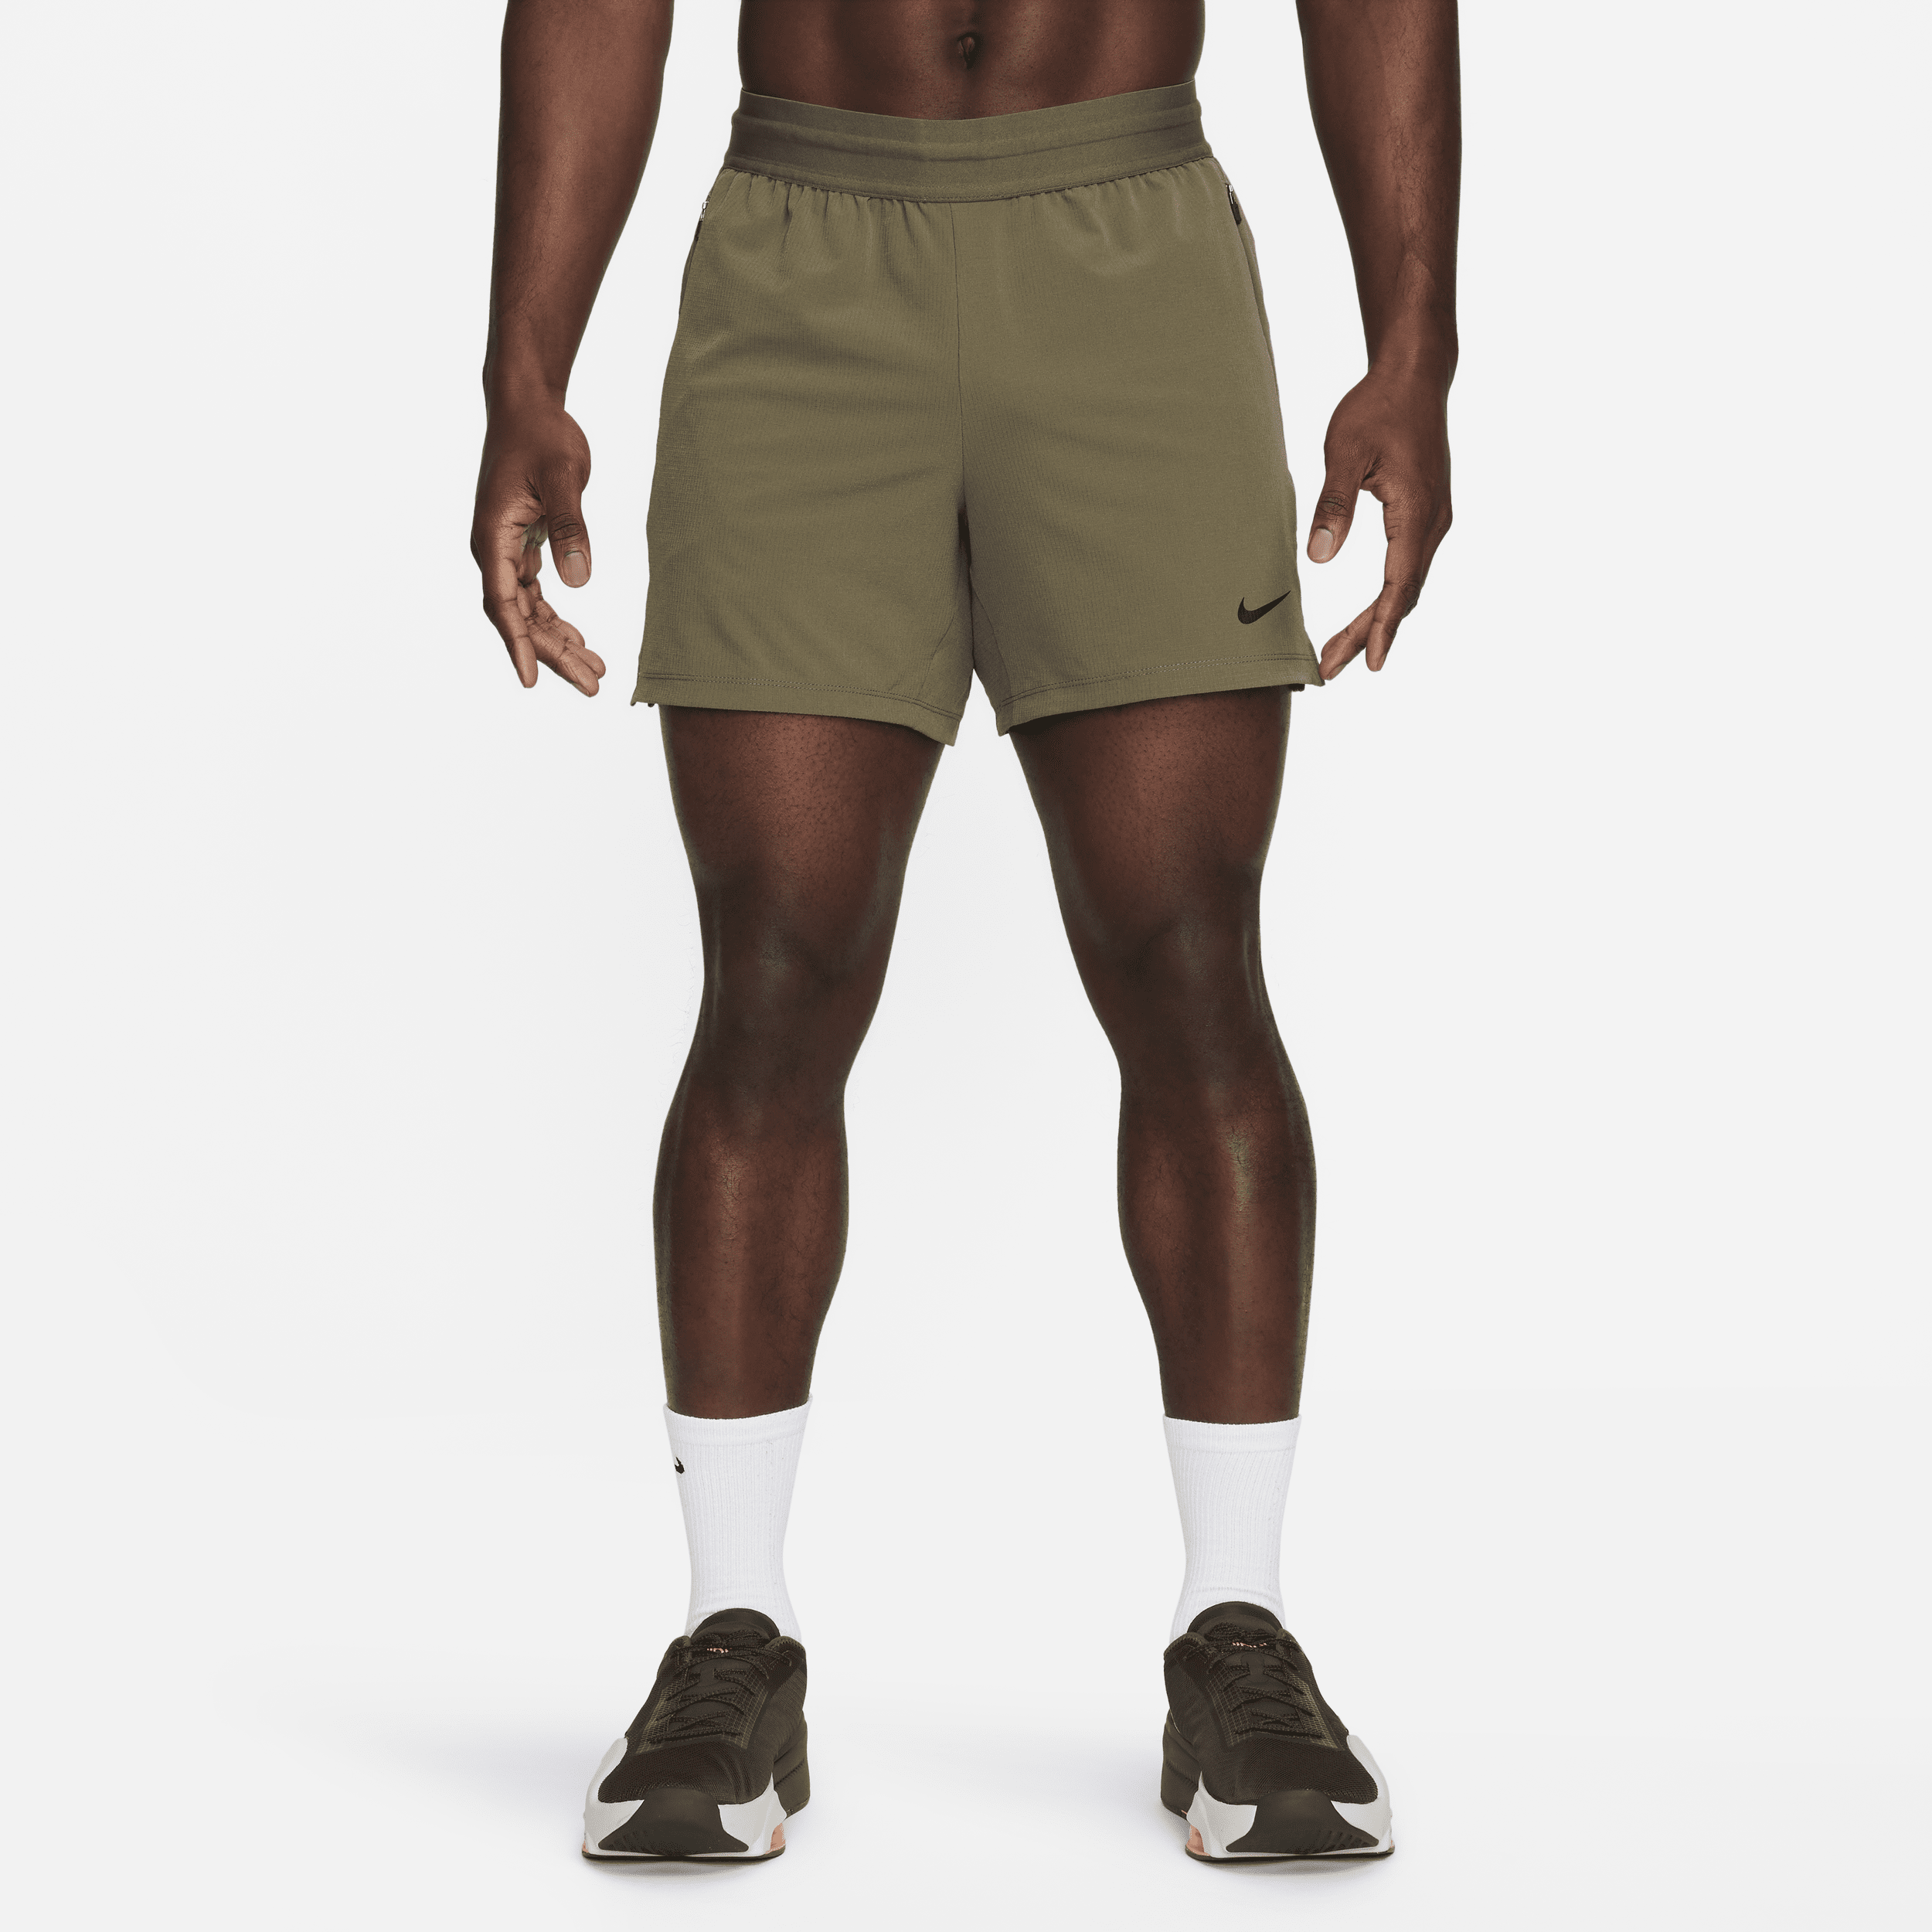 Nike Flex Rep Dri-FIT-fitnessshorts uden for (13 cm) til mænd - grøn